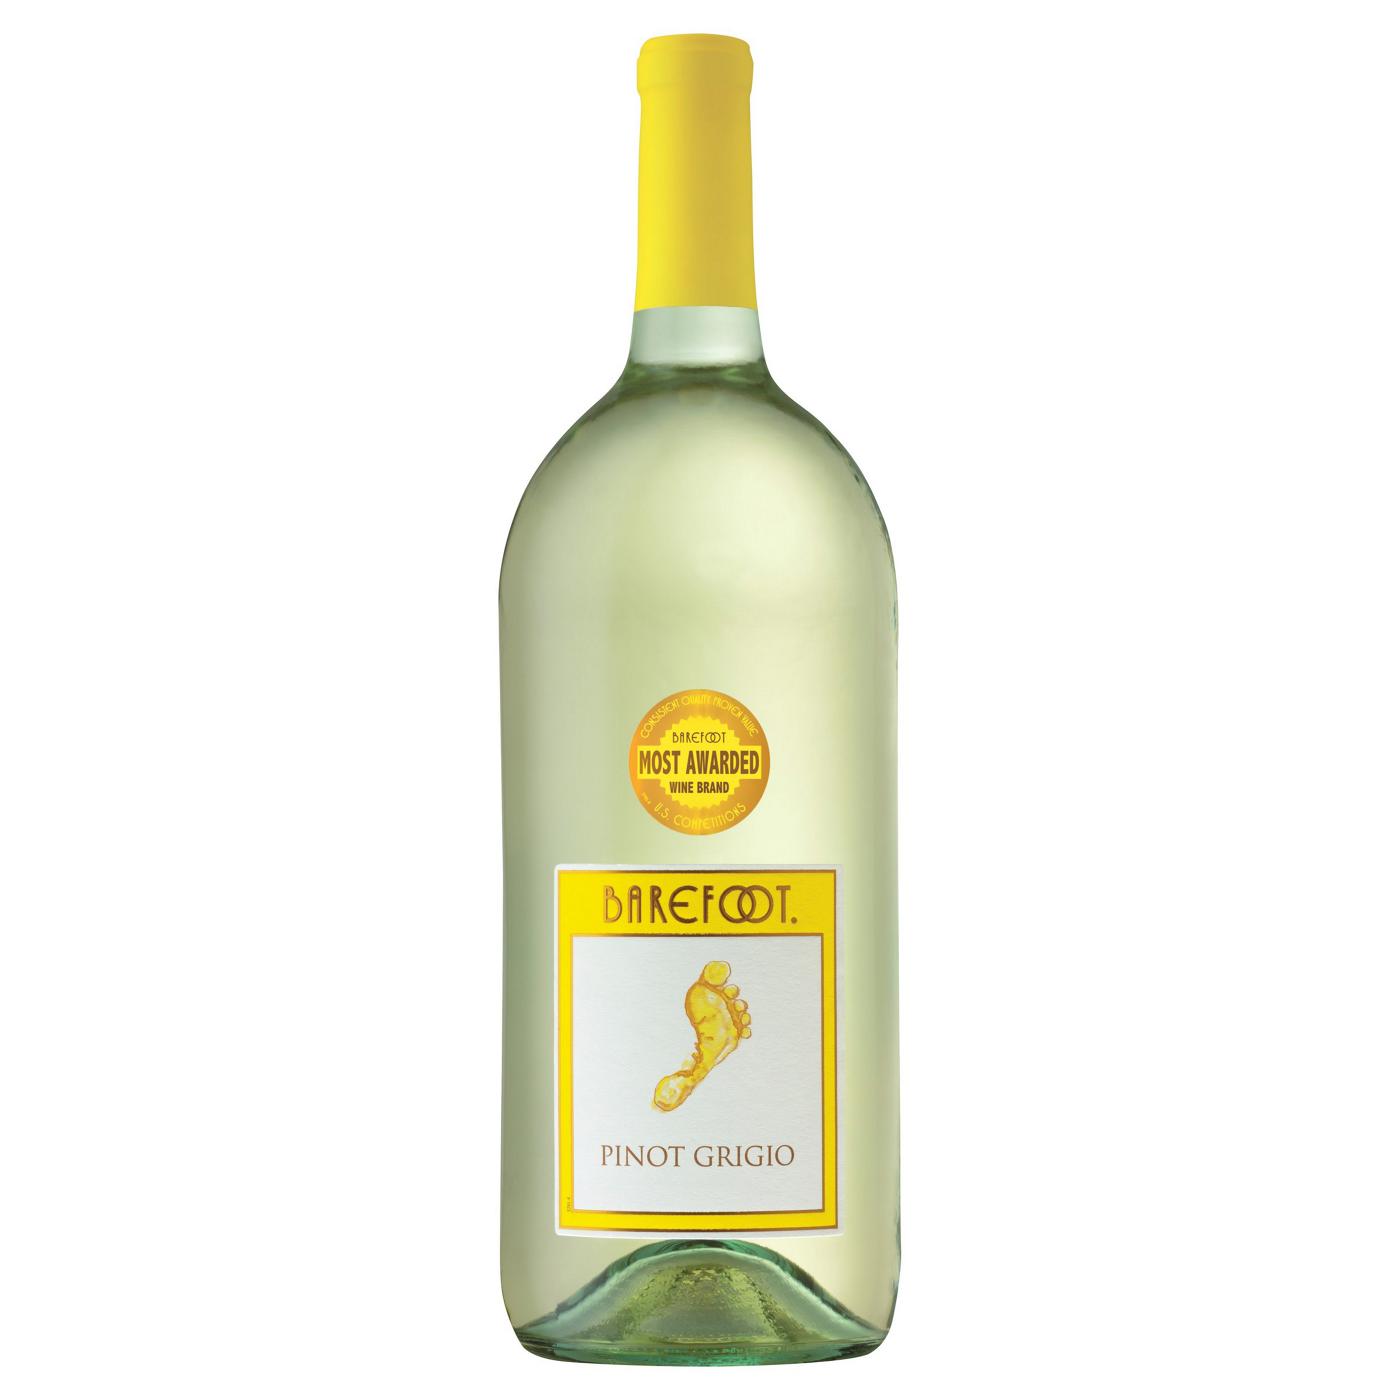 Barefoot Pinot Grigio White Wine; image 1 of 5